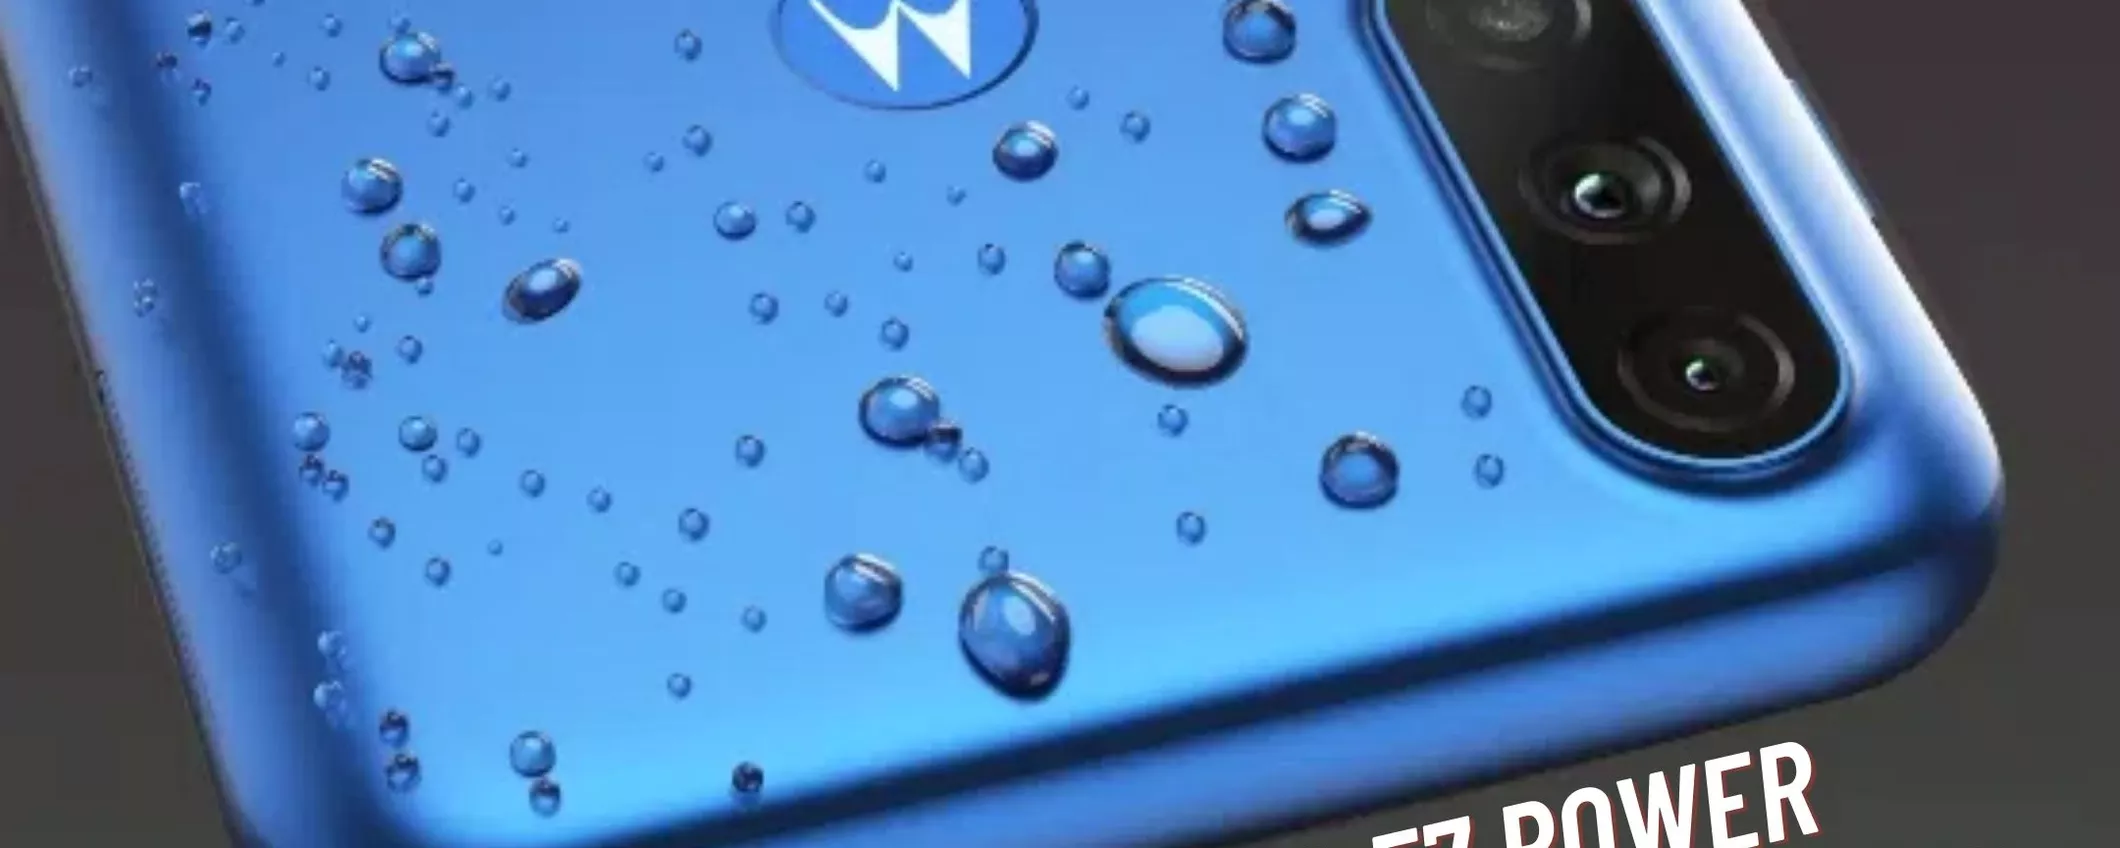 Motorola Moto E7 Power, il vostro nuovo telefono a soli 150€